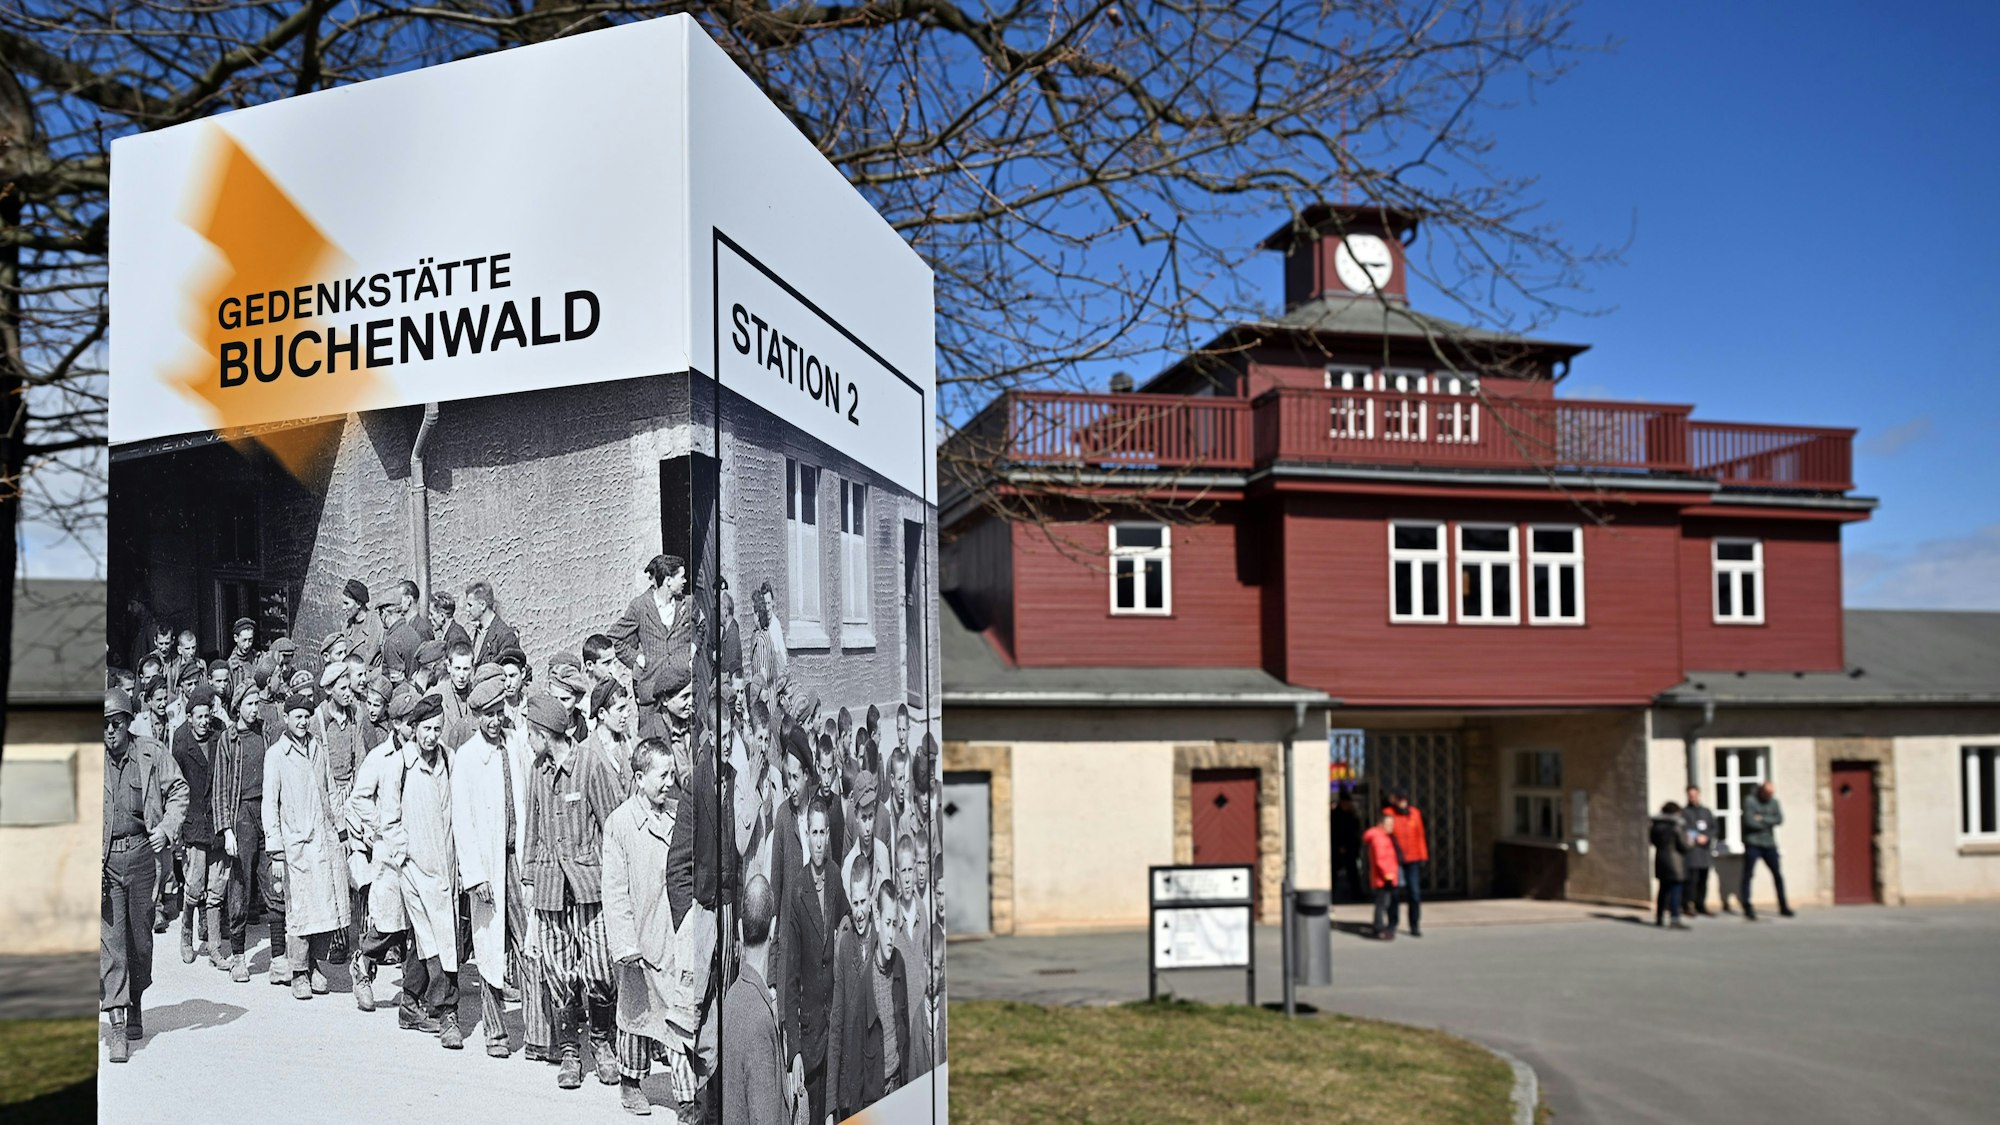 Der Eingang der KZ-Gedenkstätte Buchenwald. Nach Angaben der Gedenkstätte gibt es fast jede Woche Neonazi-Schmierereien, sie mahnte vor rechter Politik.